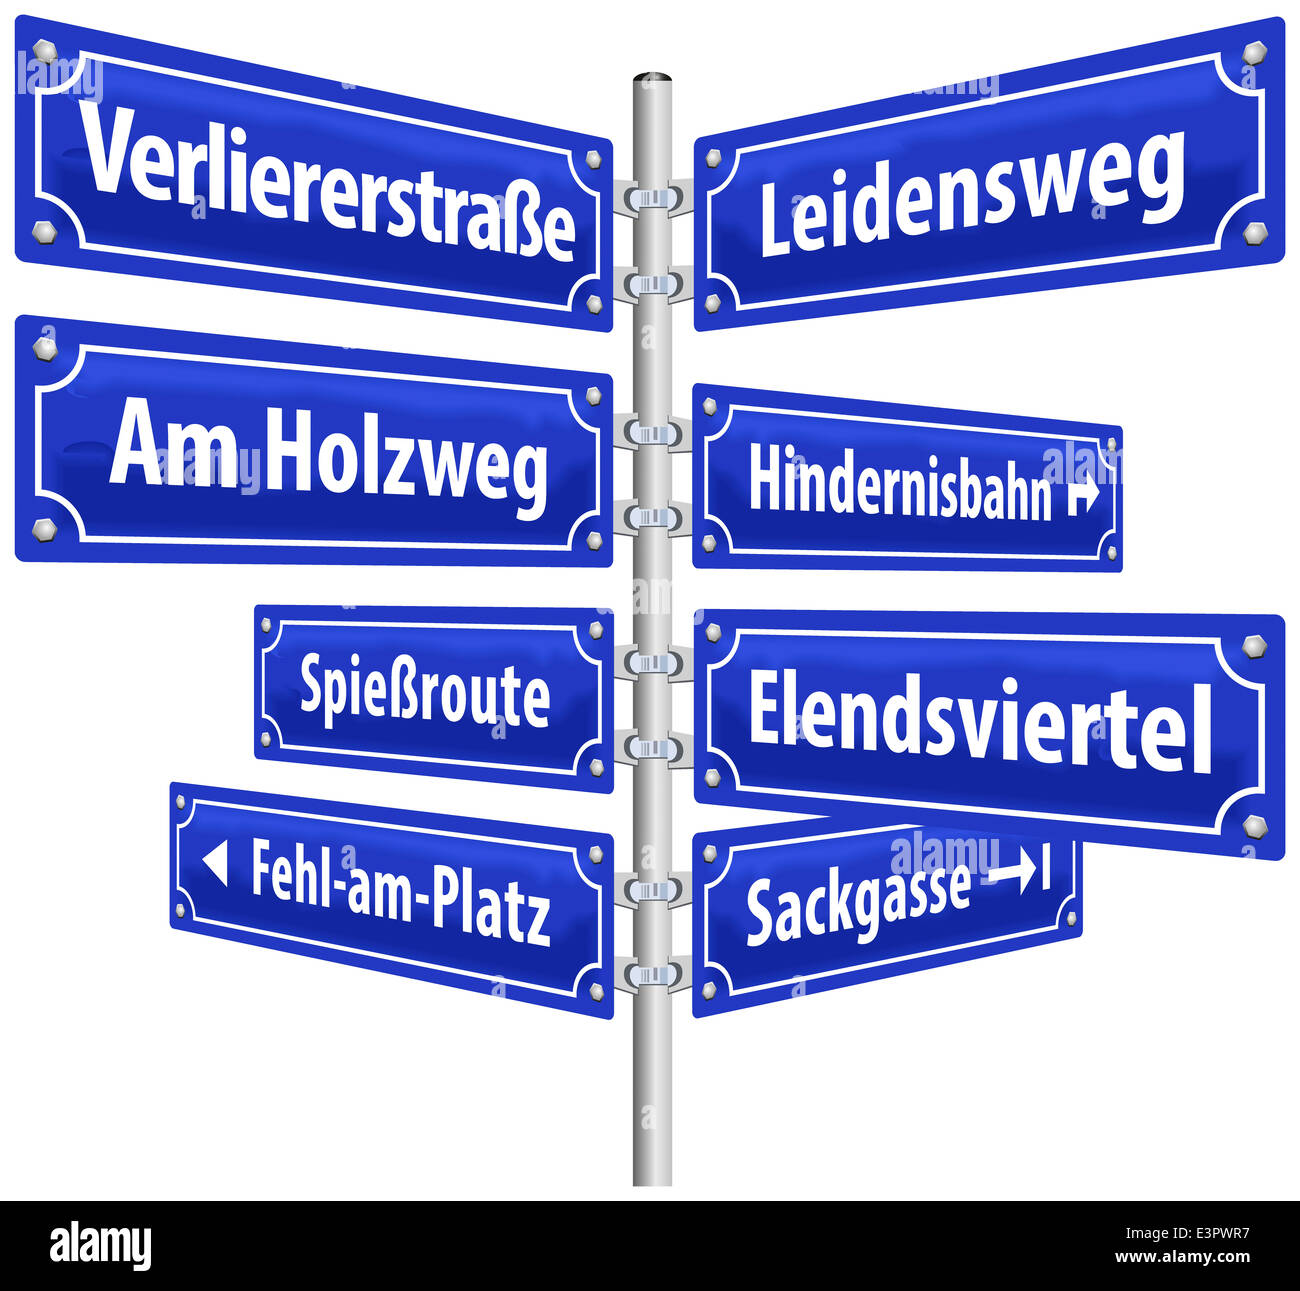 Straßenschilder mit Namen, die Lebensweise der Verlierer bedeuten. Deutsche Beschriftung! Stockfoto